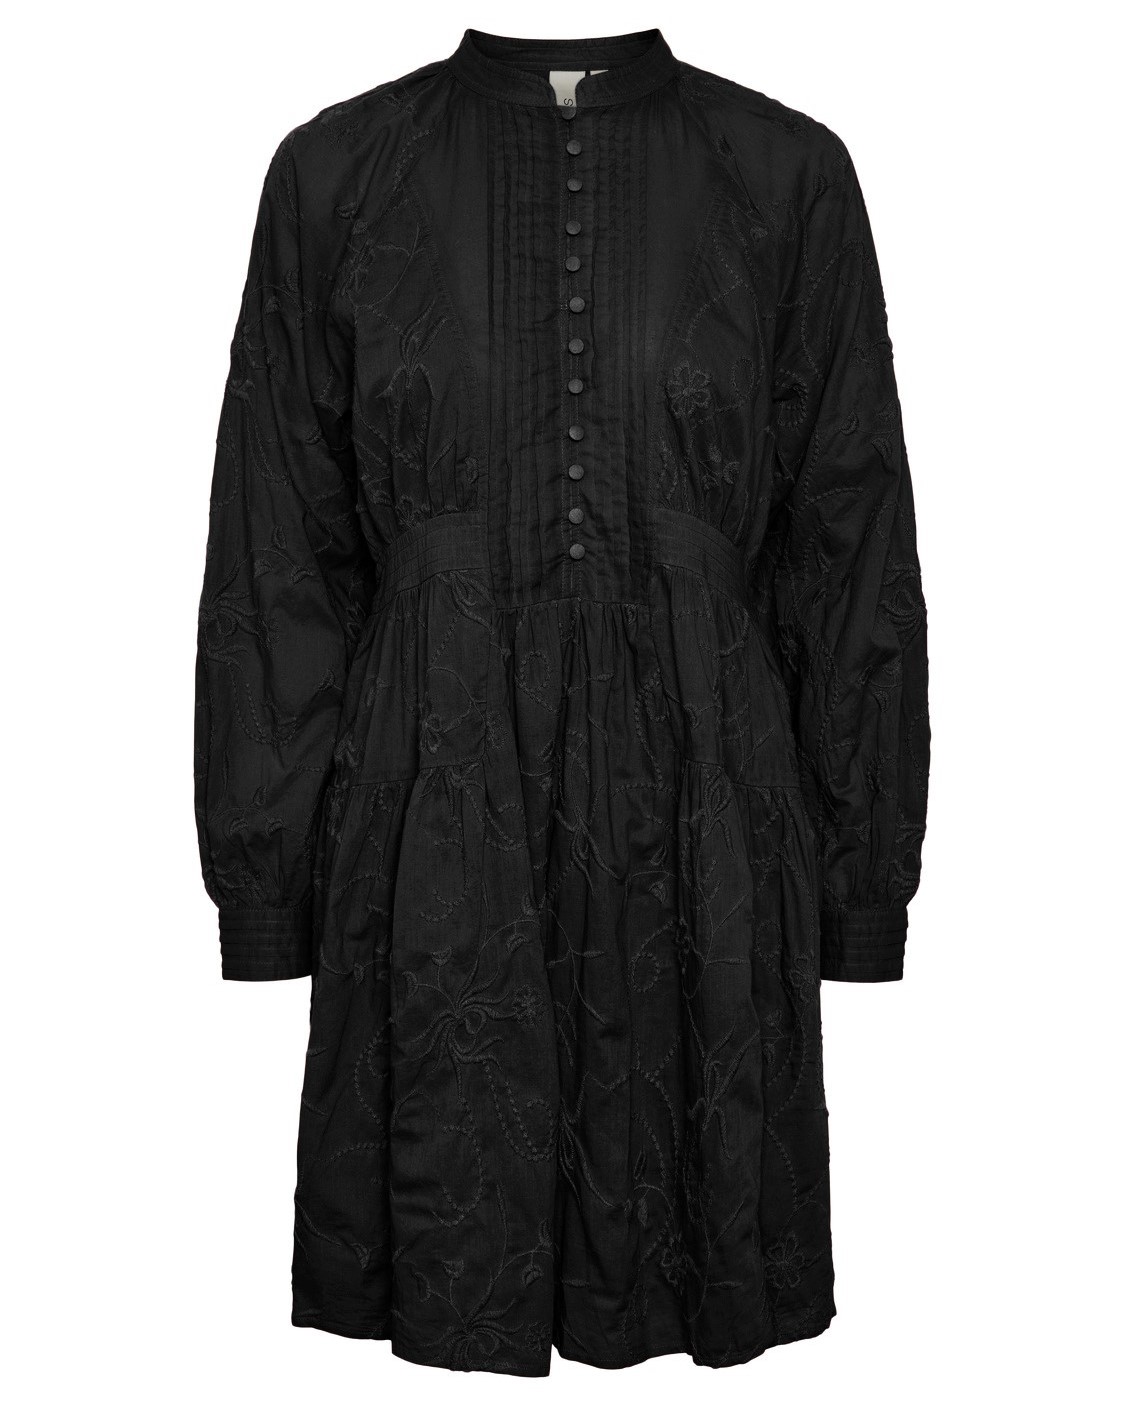 Yasgia Dress Black - Yas